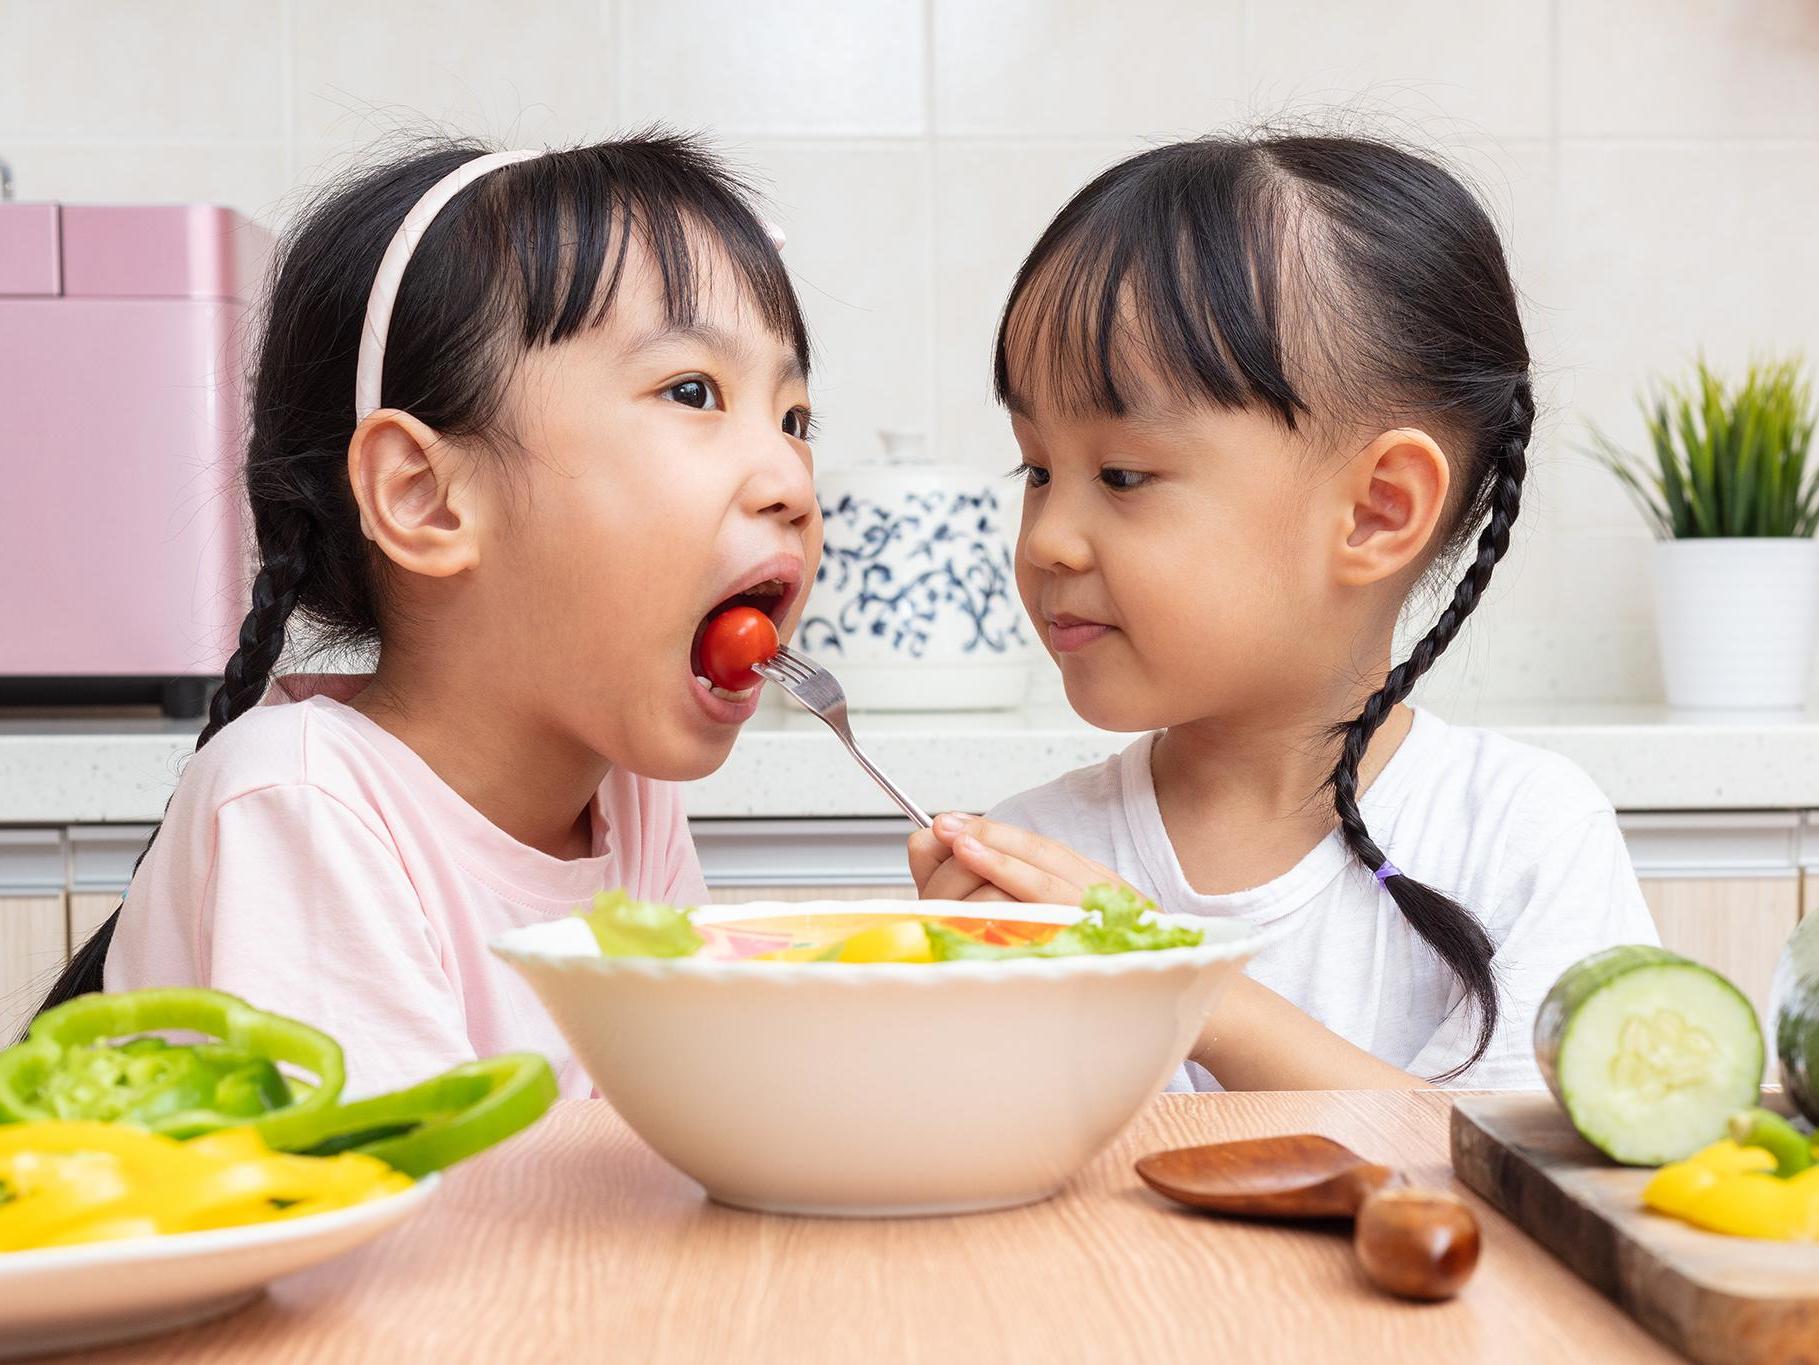 children sharing food